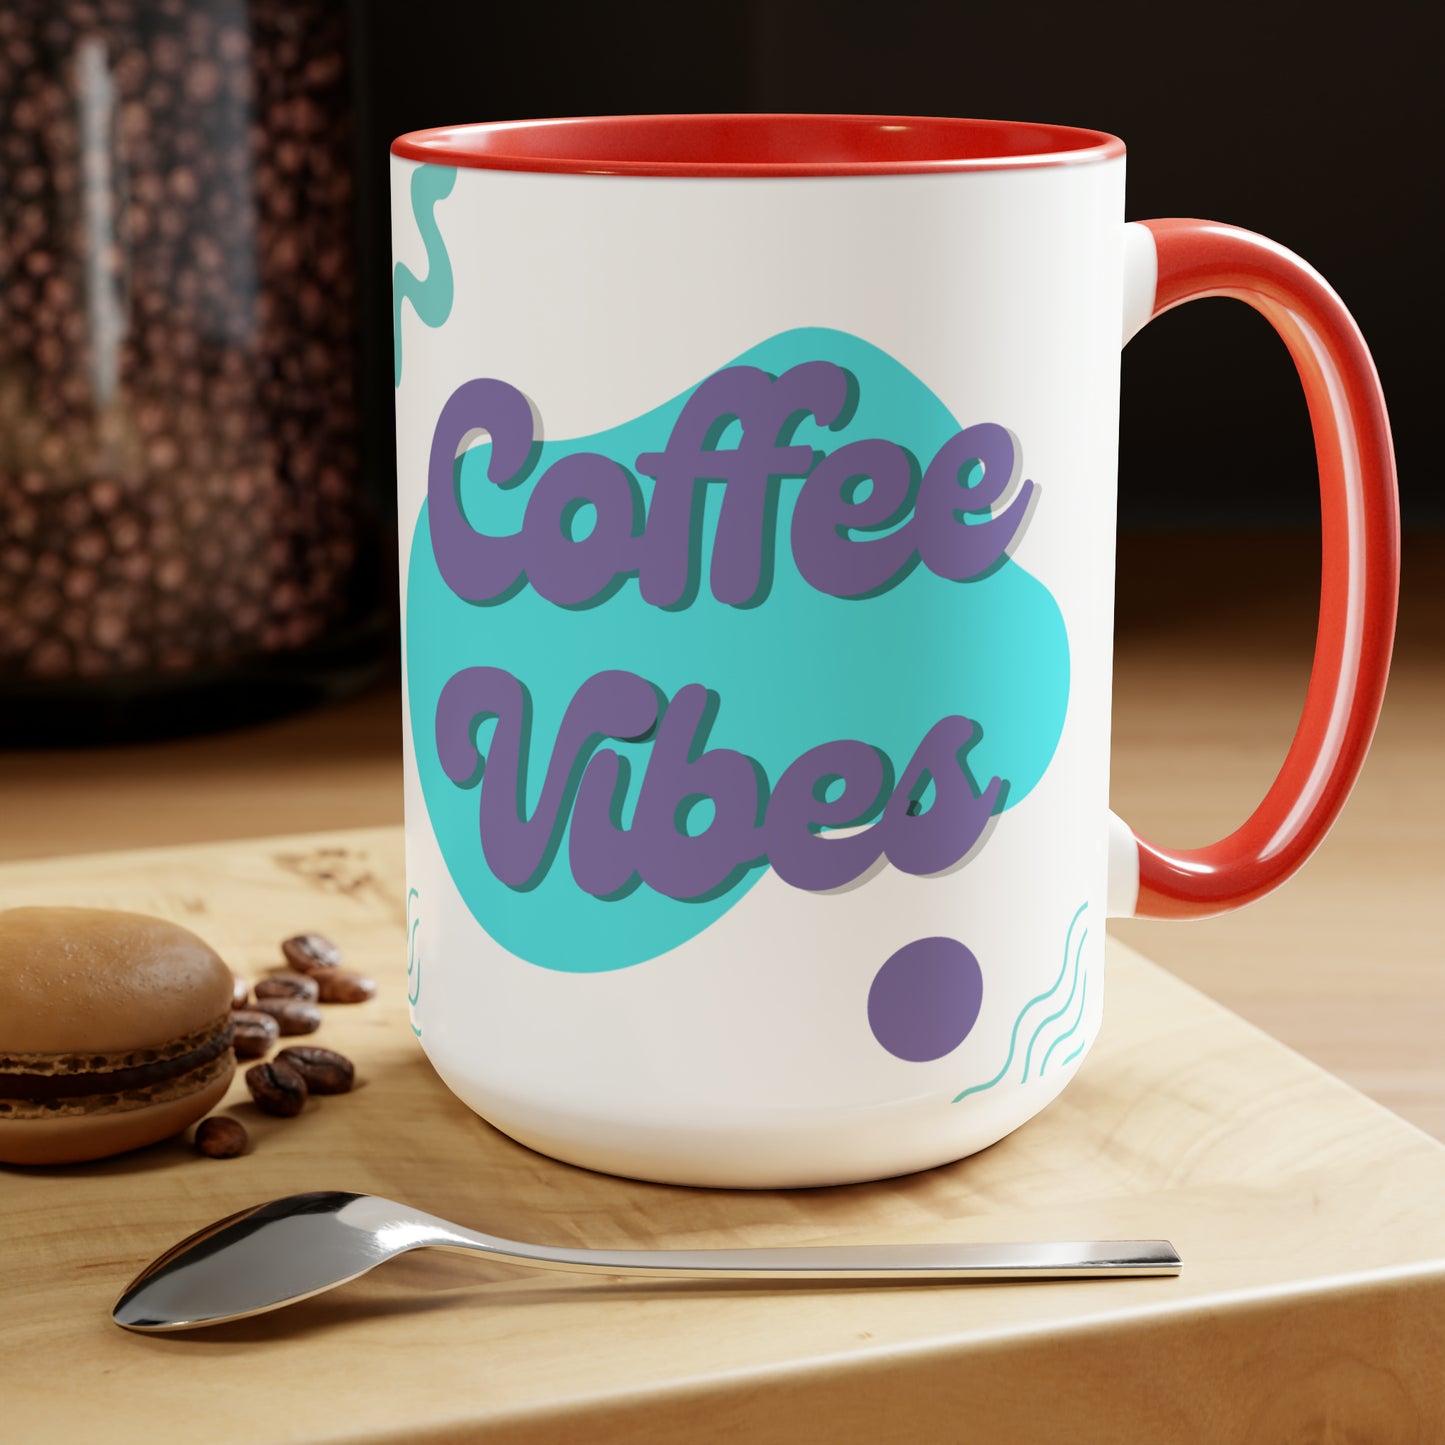 Coffee Vibes Two-Tone Coffee Mugs, 15oz